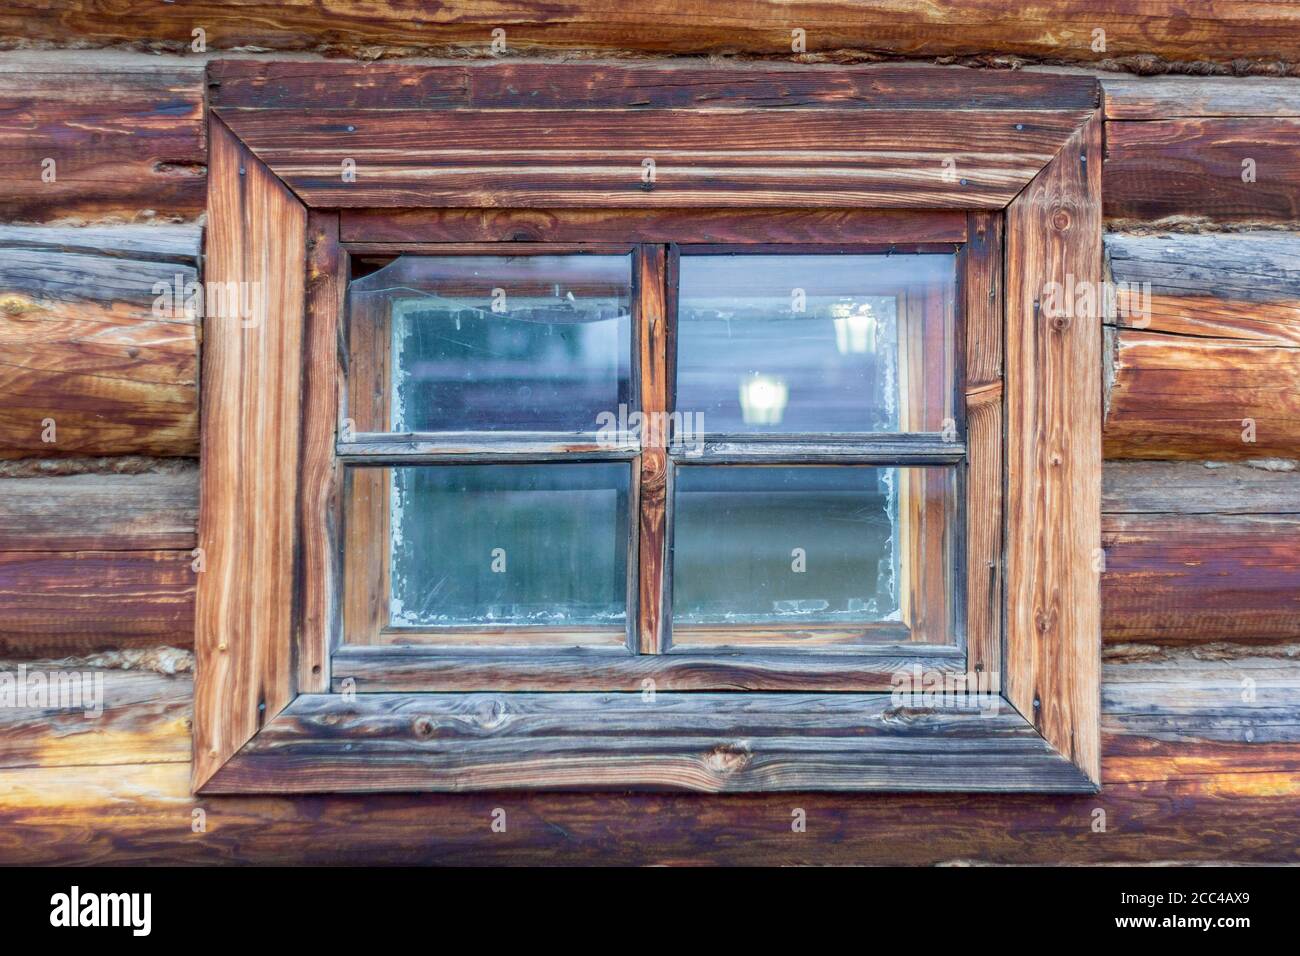 Ein Fragment einer alten Holzhütte mit einem Fenster. Ein altes kleines Fenster mit Rissen in einer alten Holzhütte. Stockfoto